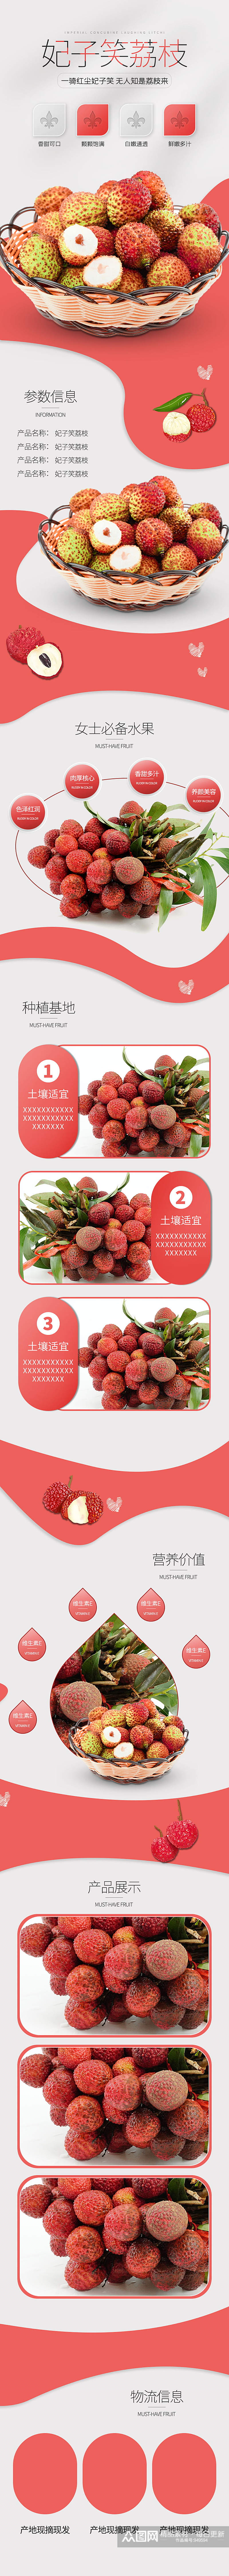 甜品食物生鲜果蔬水果荔枝葡萄简约风详情页素材